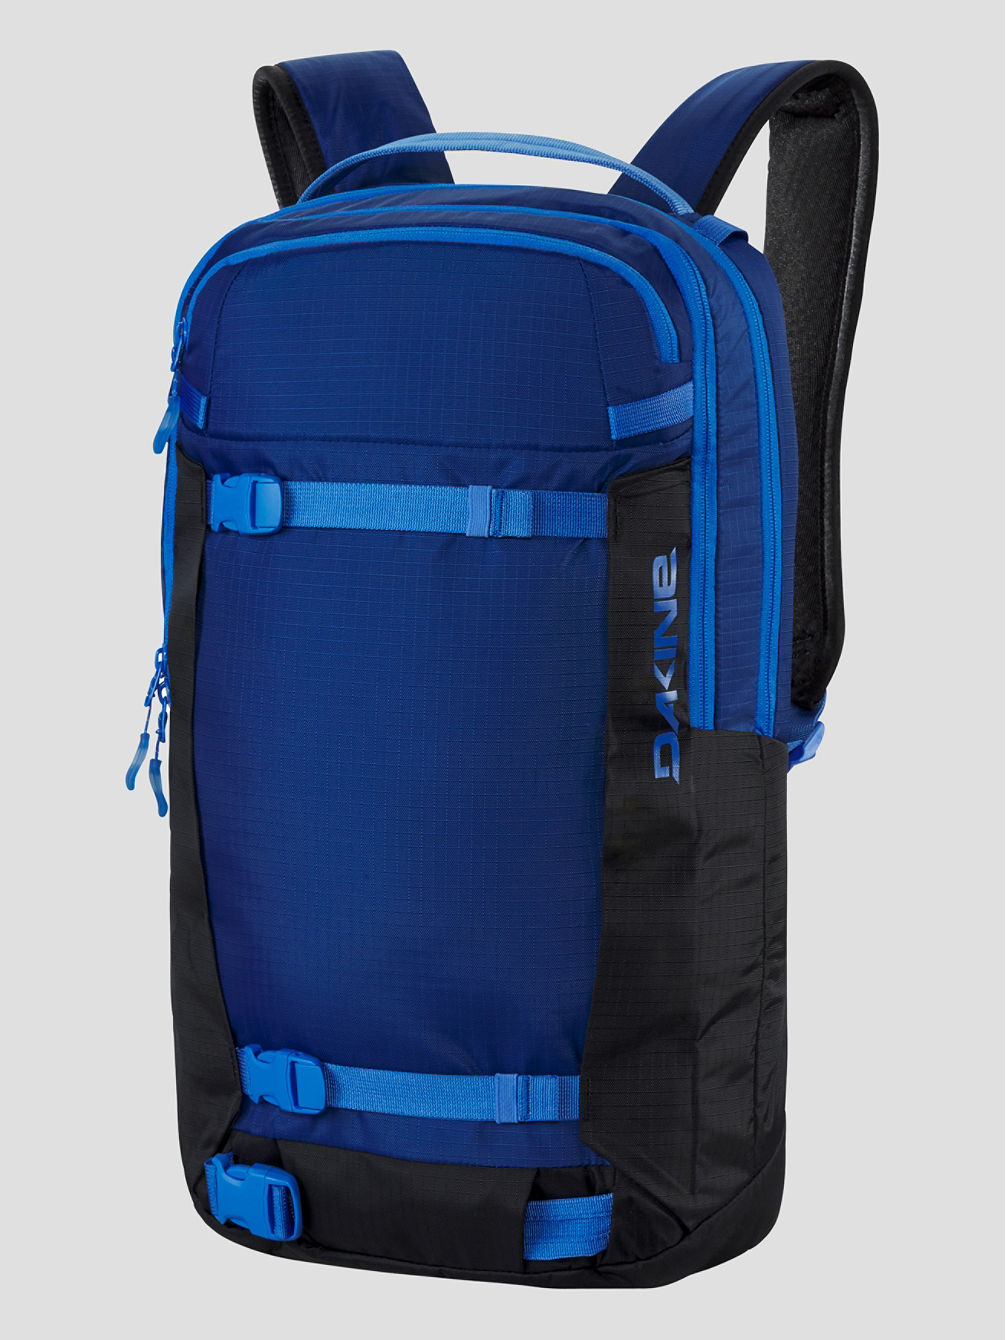 Mission Pro 18L Backpack